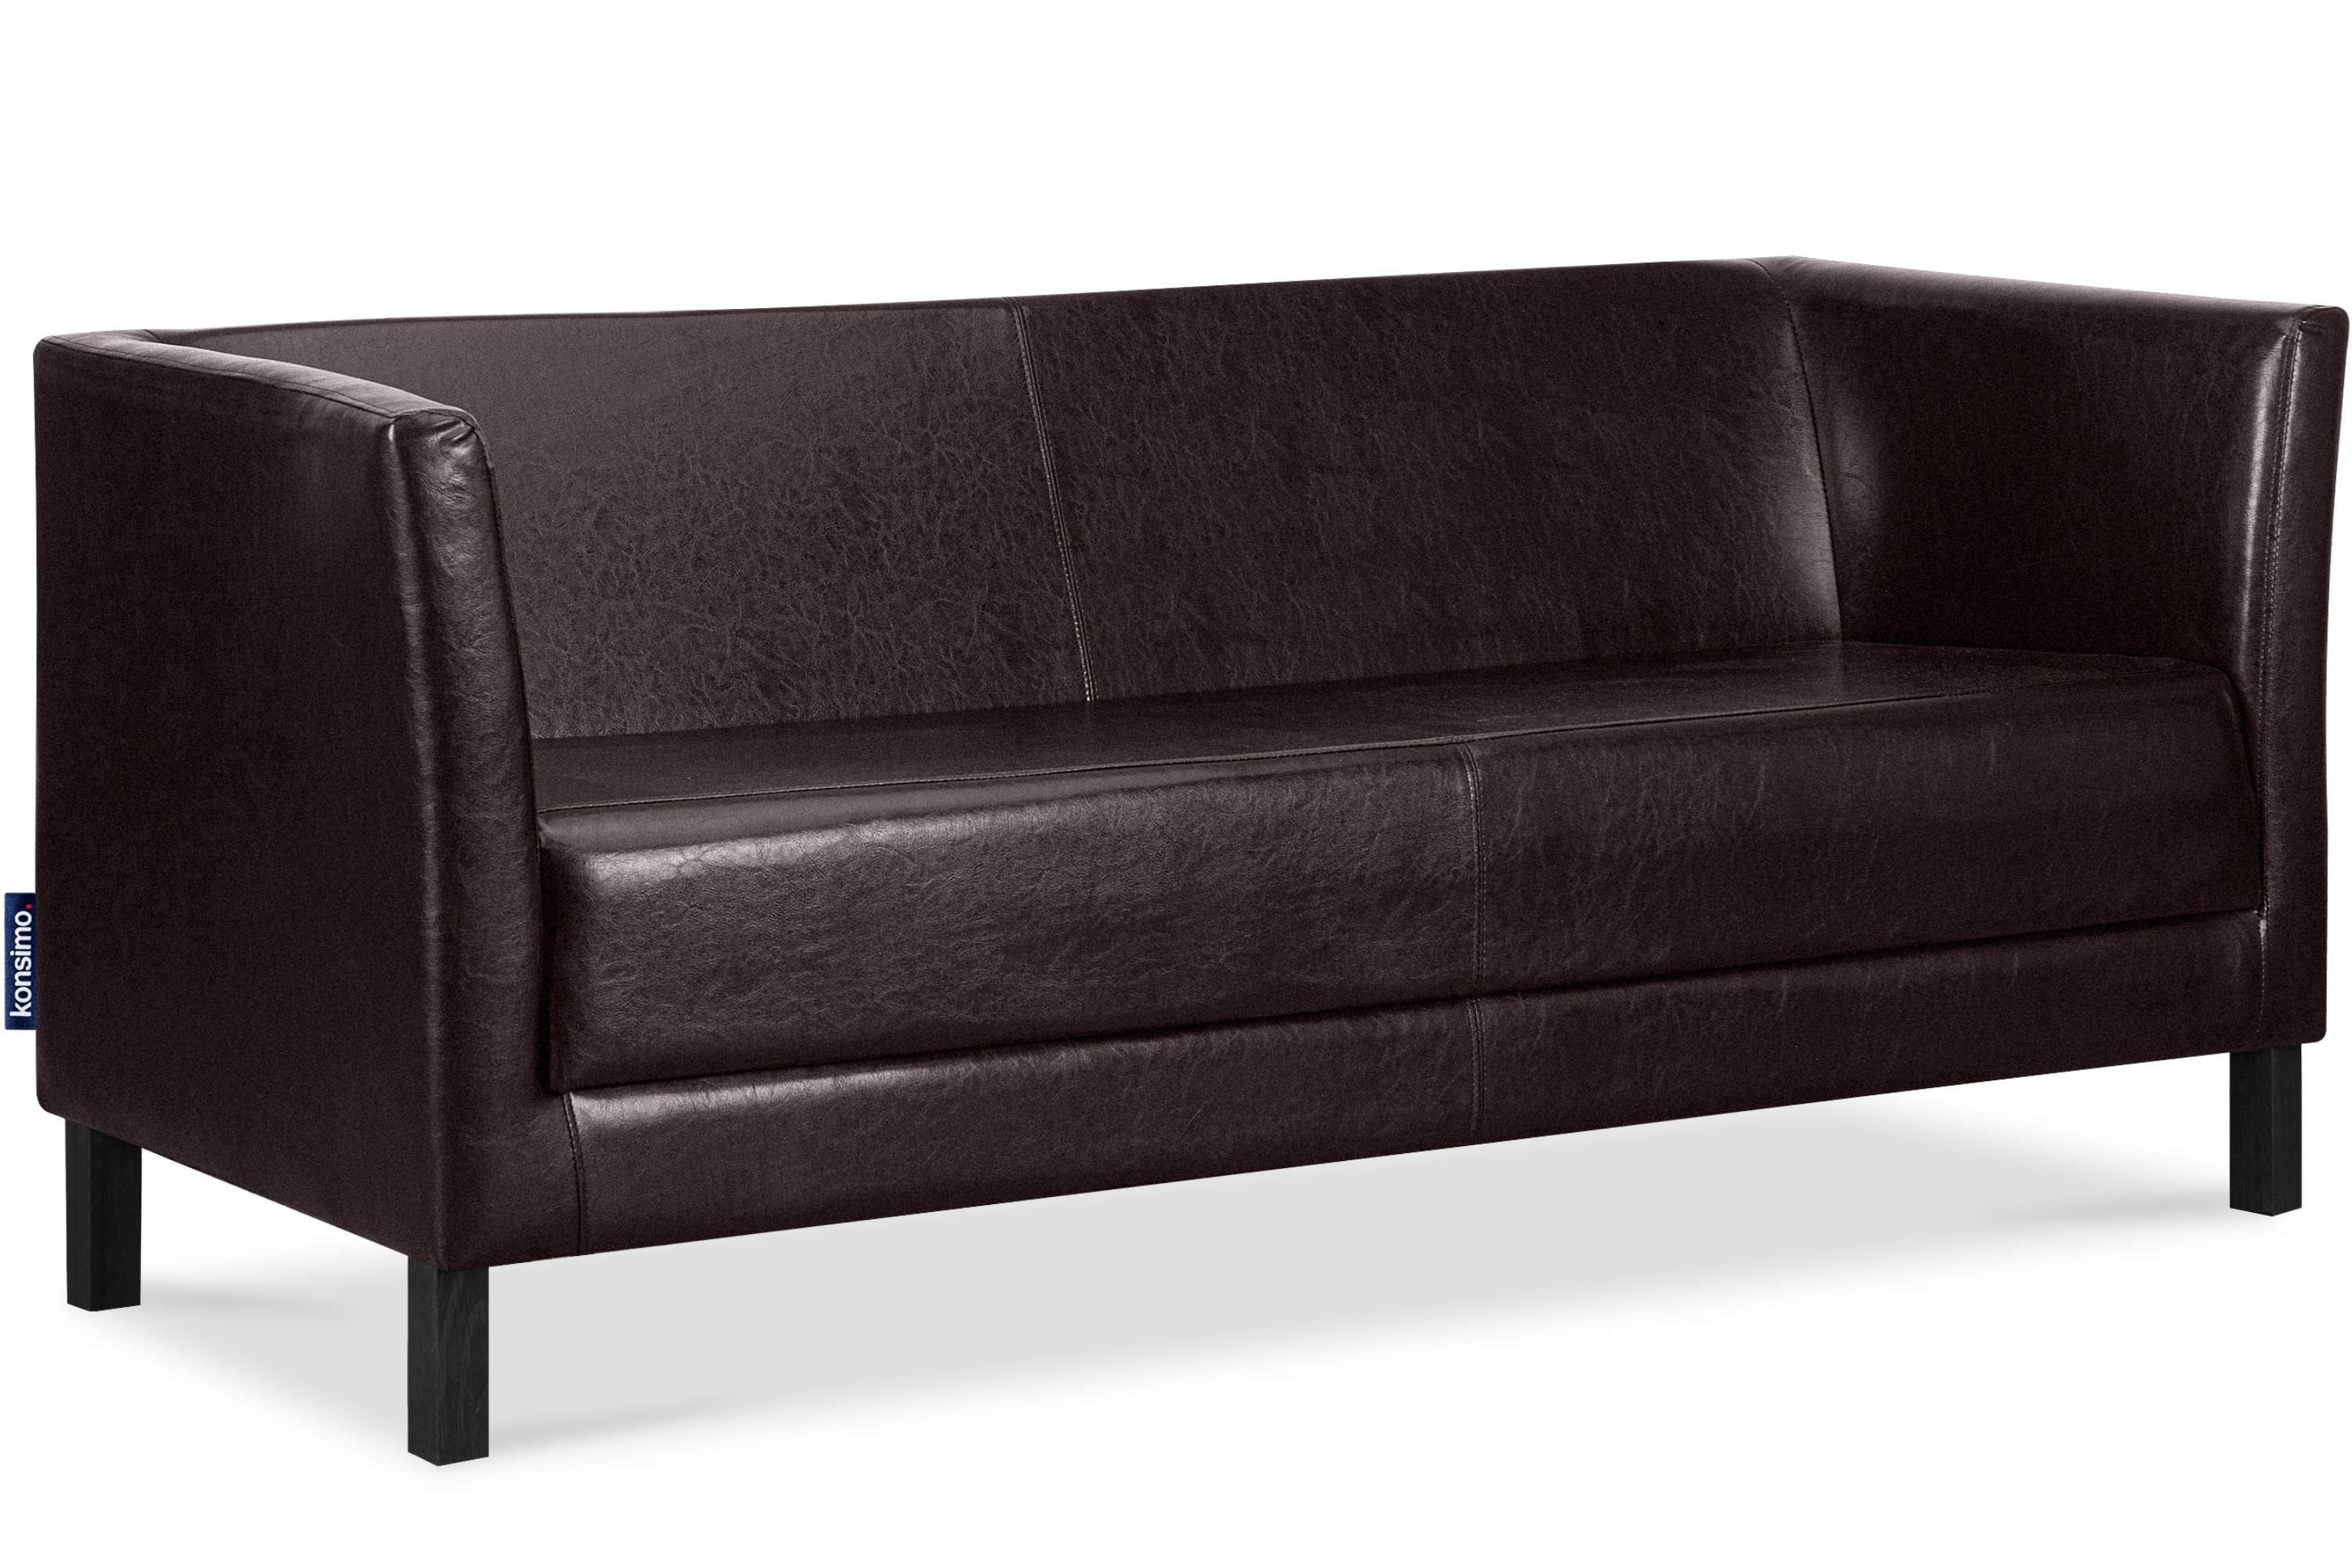 Sofa 3 1 hohe | Sitzer, Rückenlehne, Sitzfläche Dunkelbraun Sofa Kunstleder weiche und ESPECTO hohe Beine, Dunkelbraun Konsimo Teile,